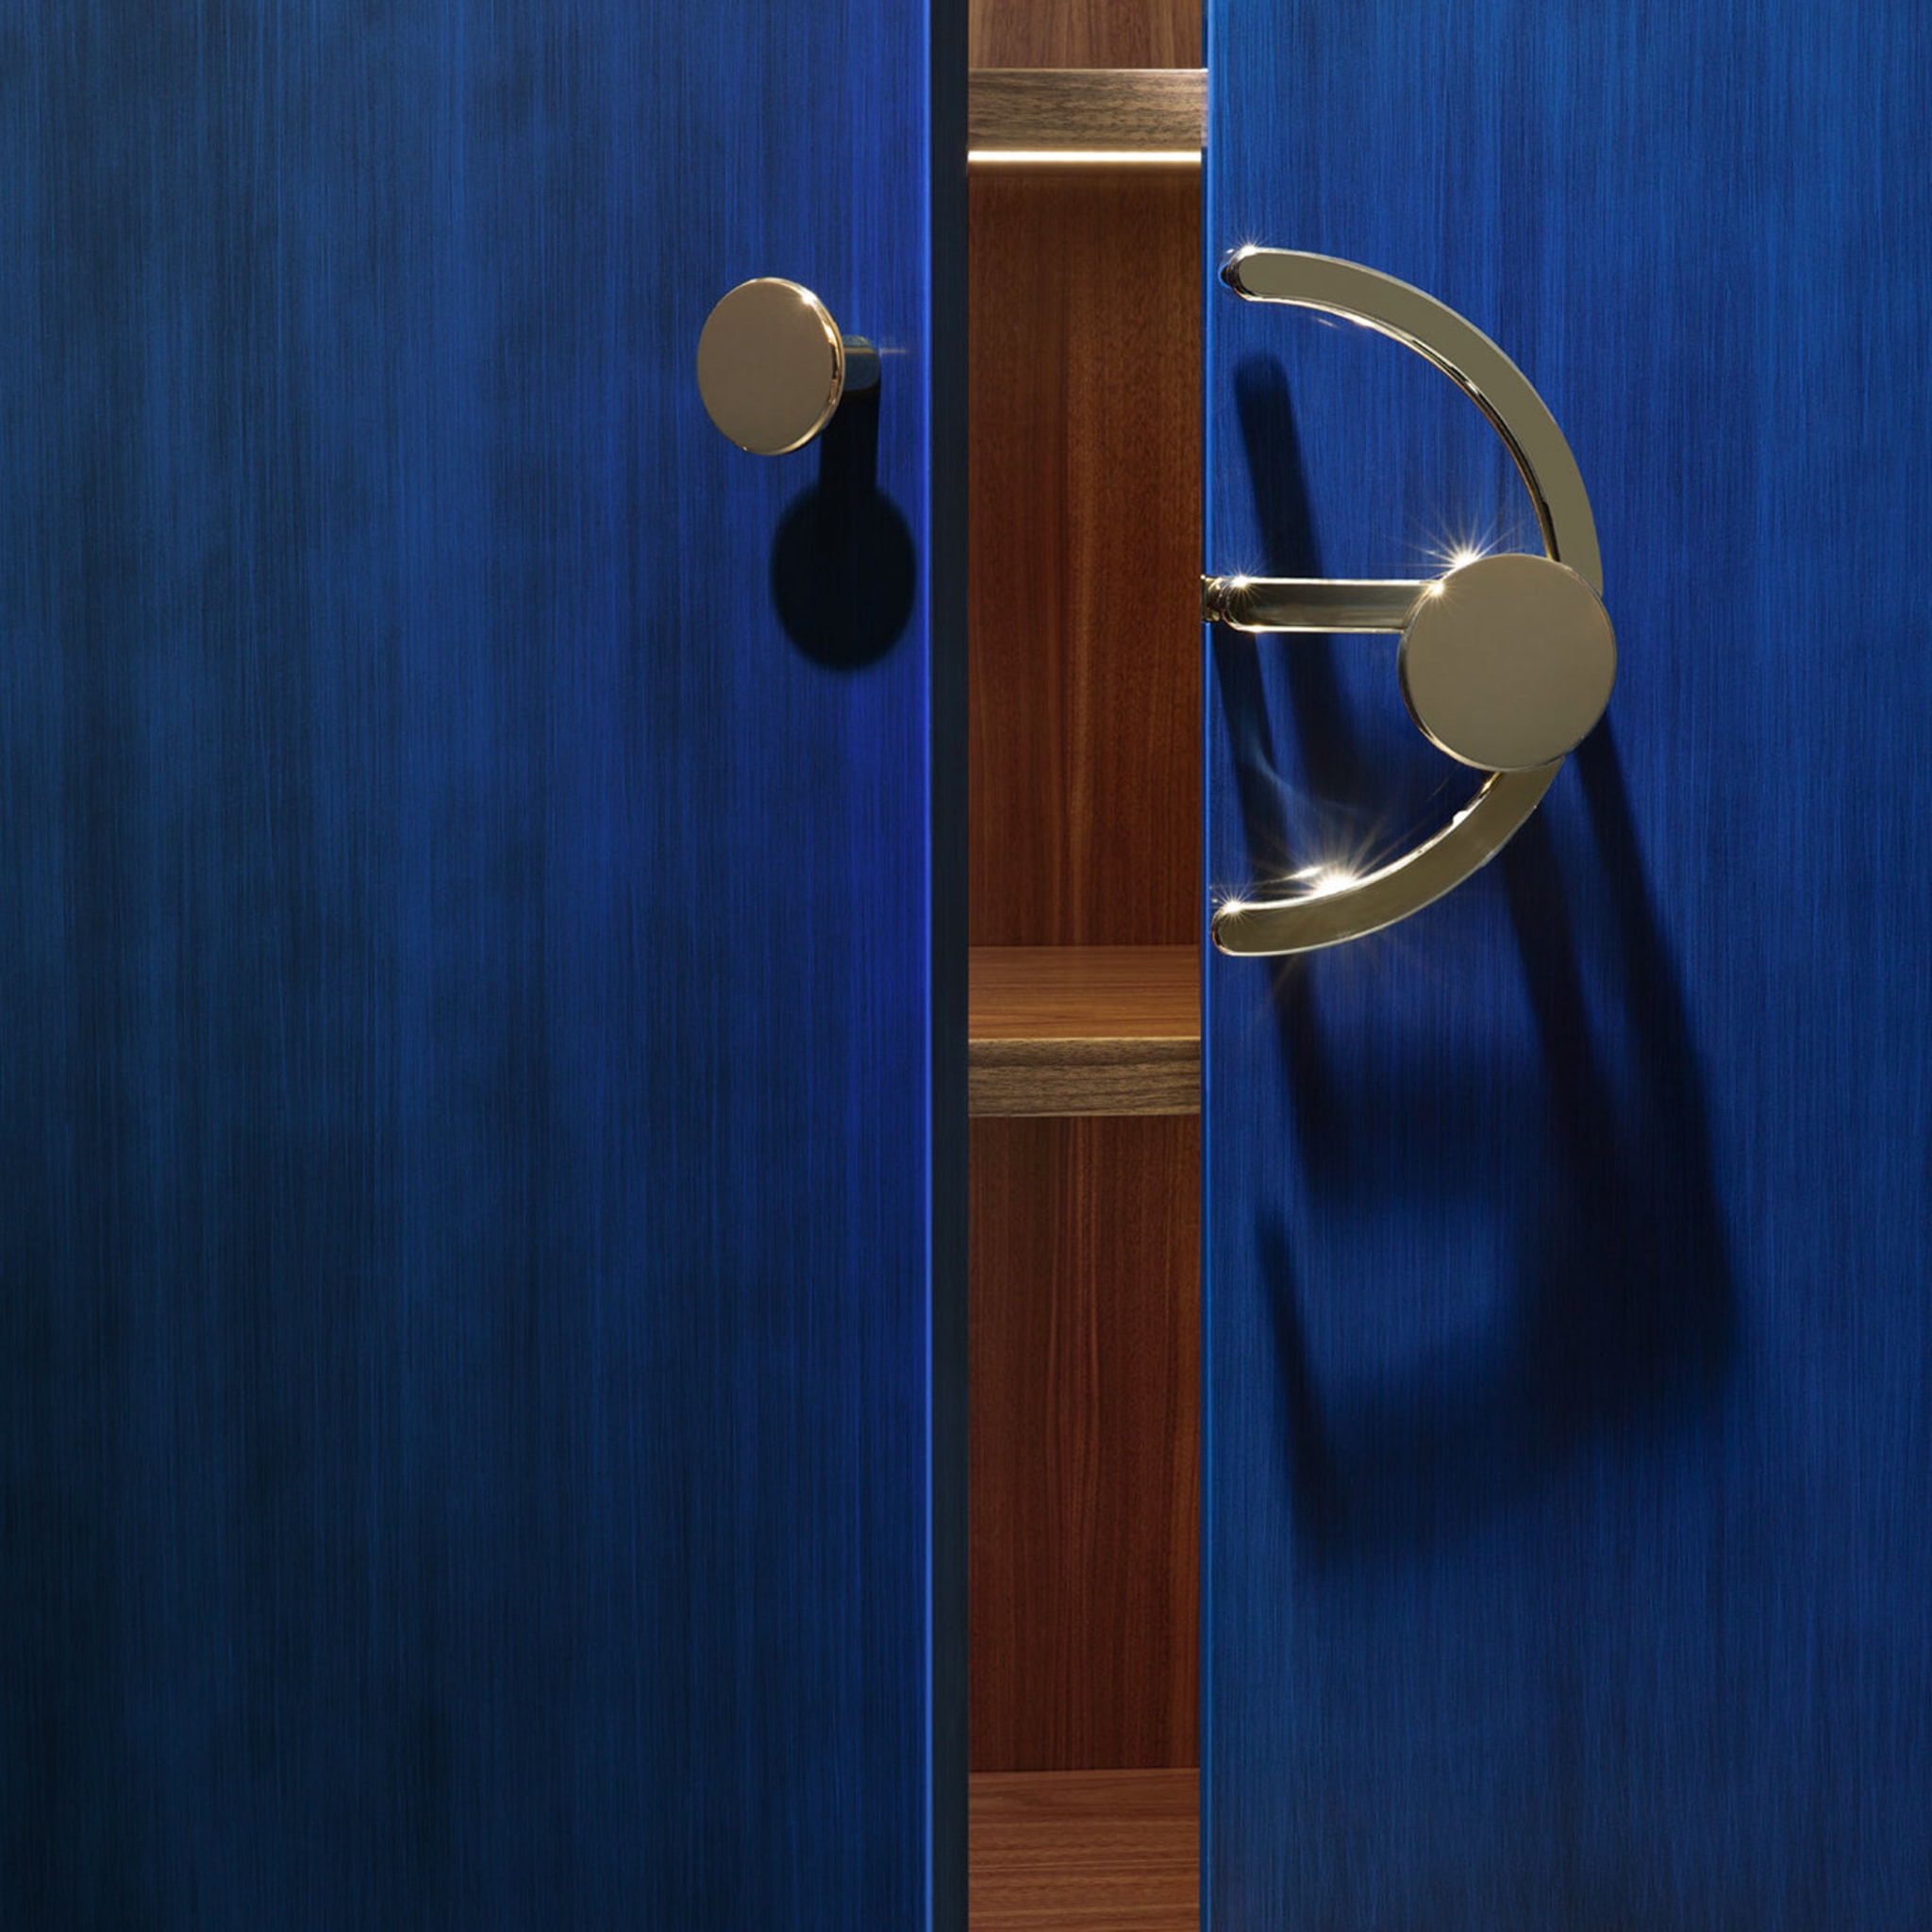 Blue Clockwork Cabinet by Lanzavecchia+Wai - Alternative view 3